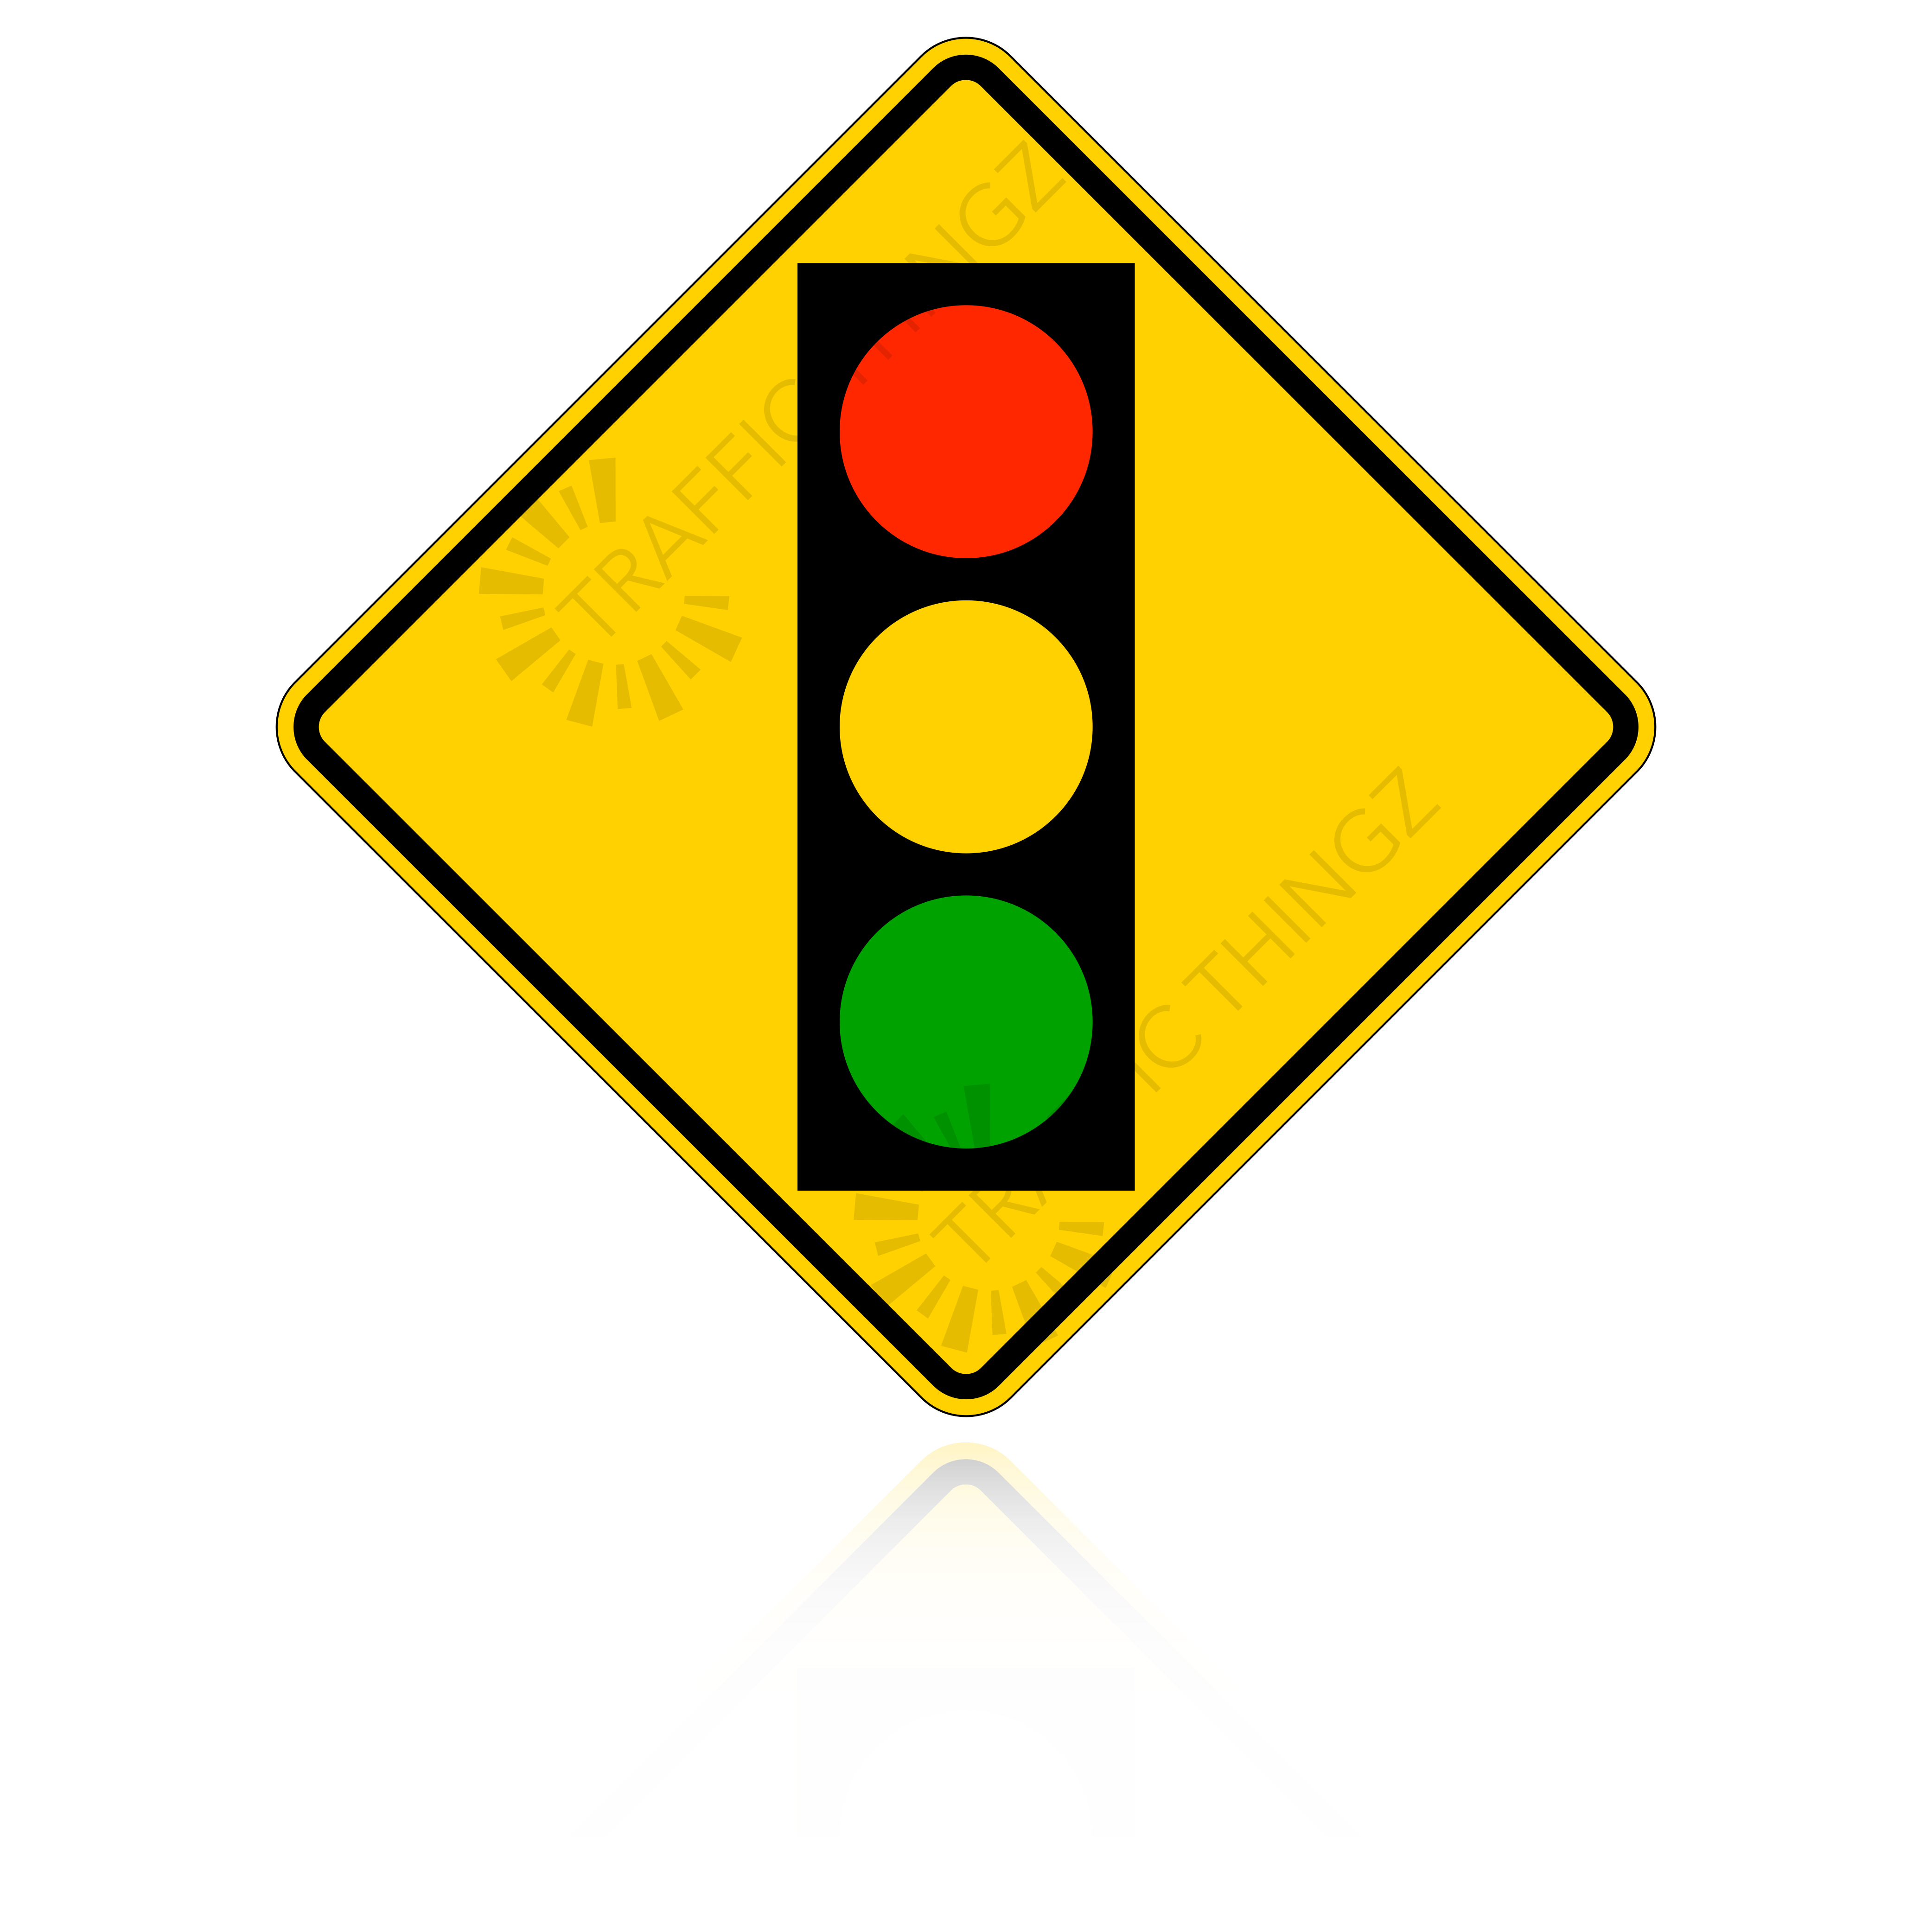 Mutcd Traffic Signal Sign